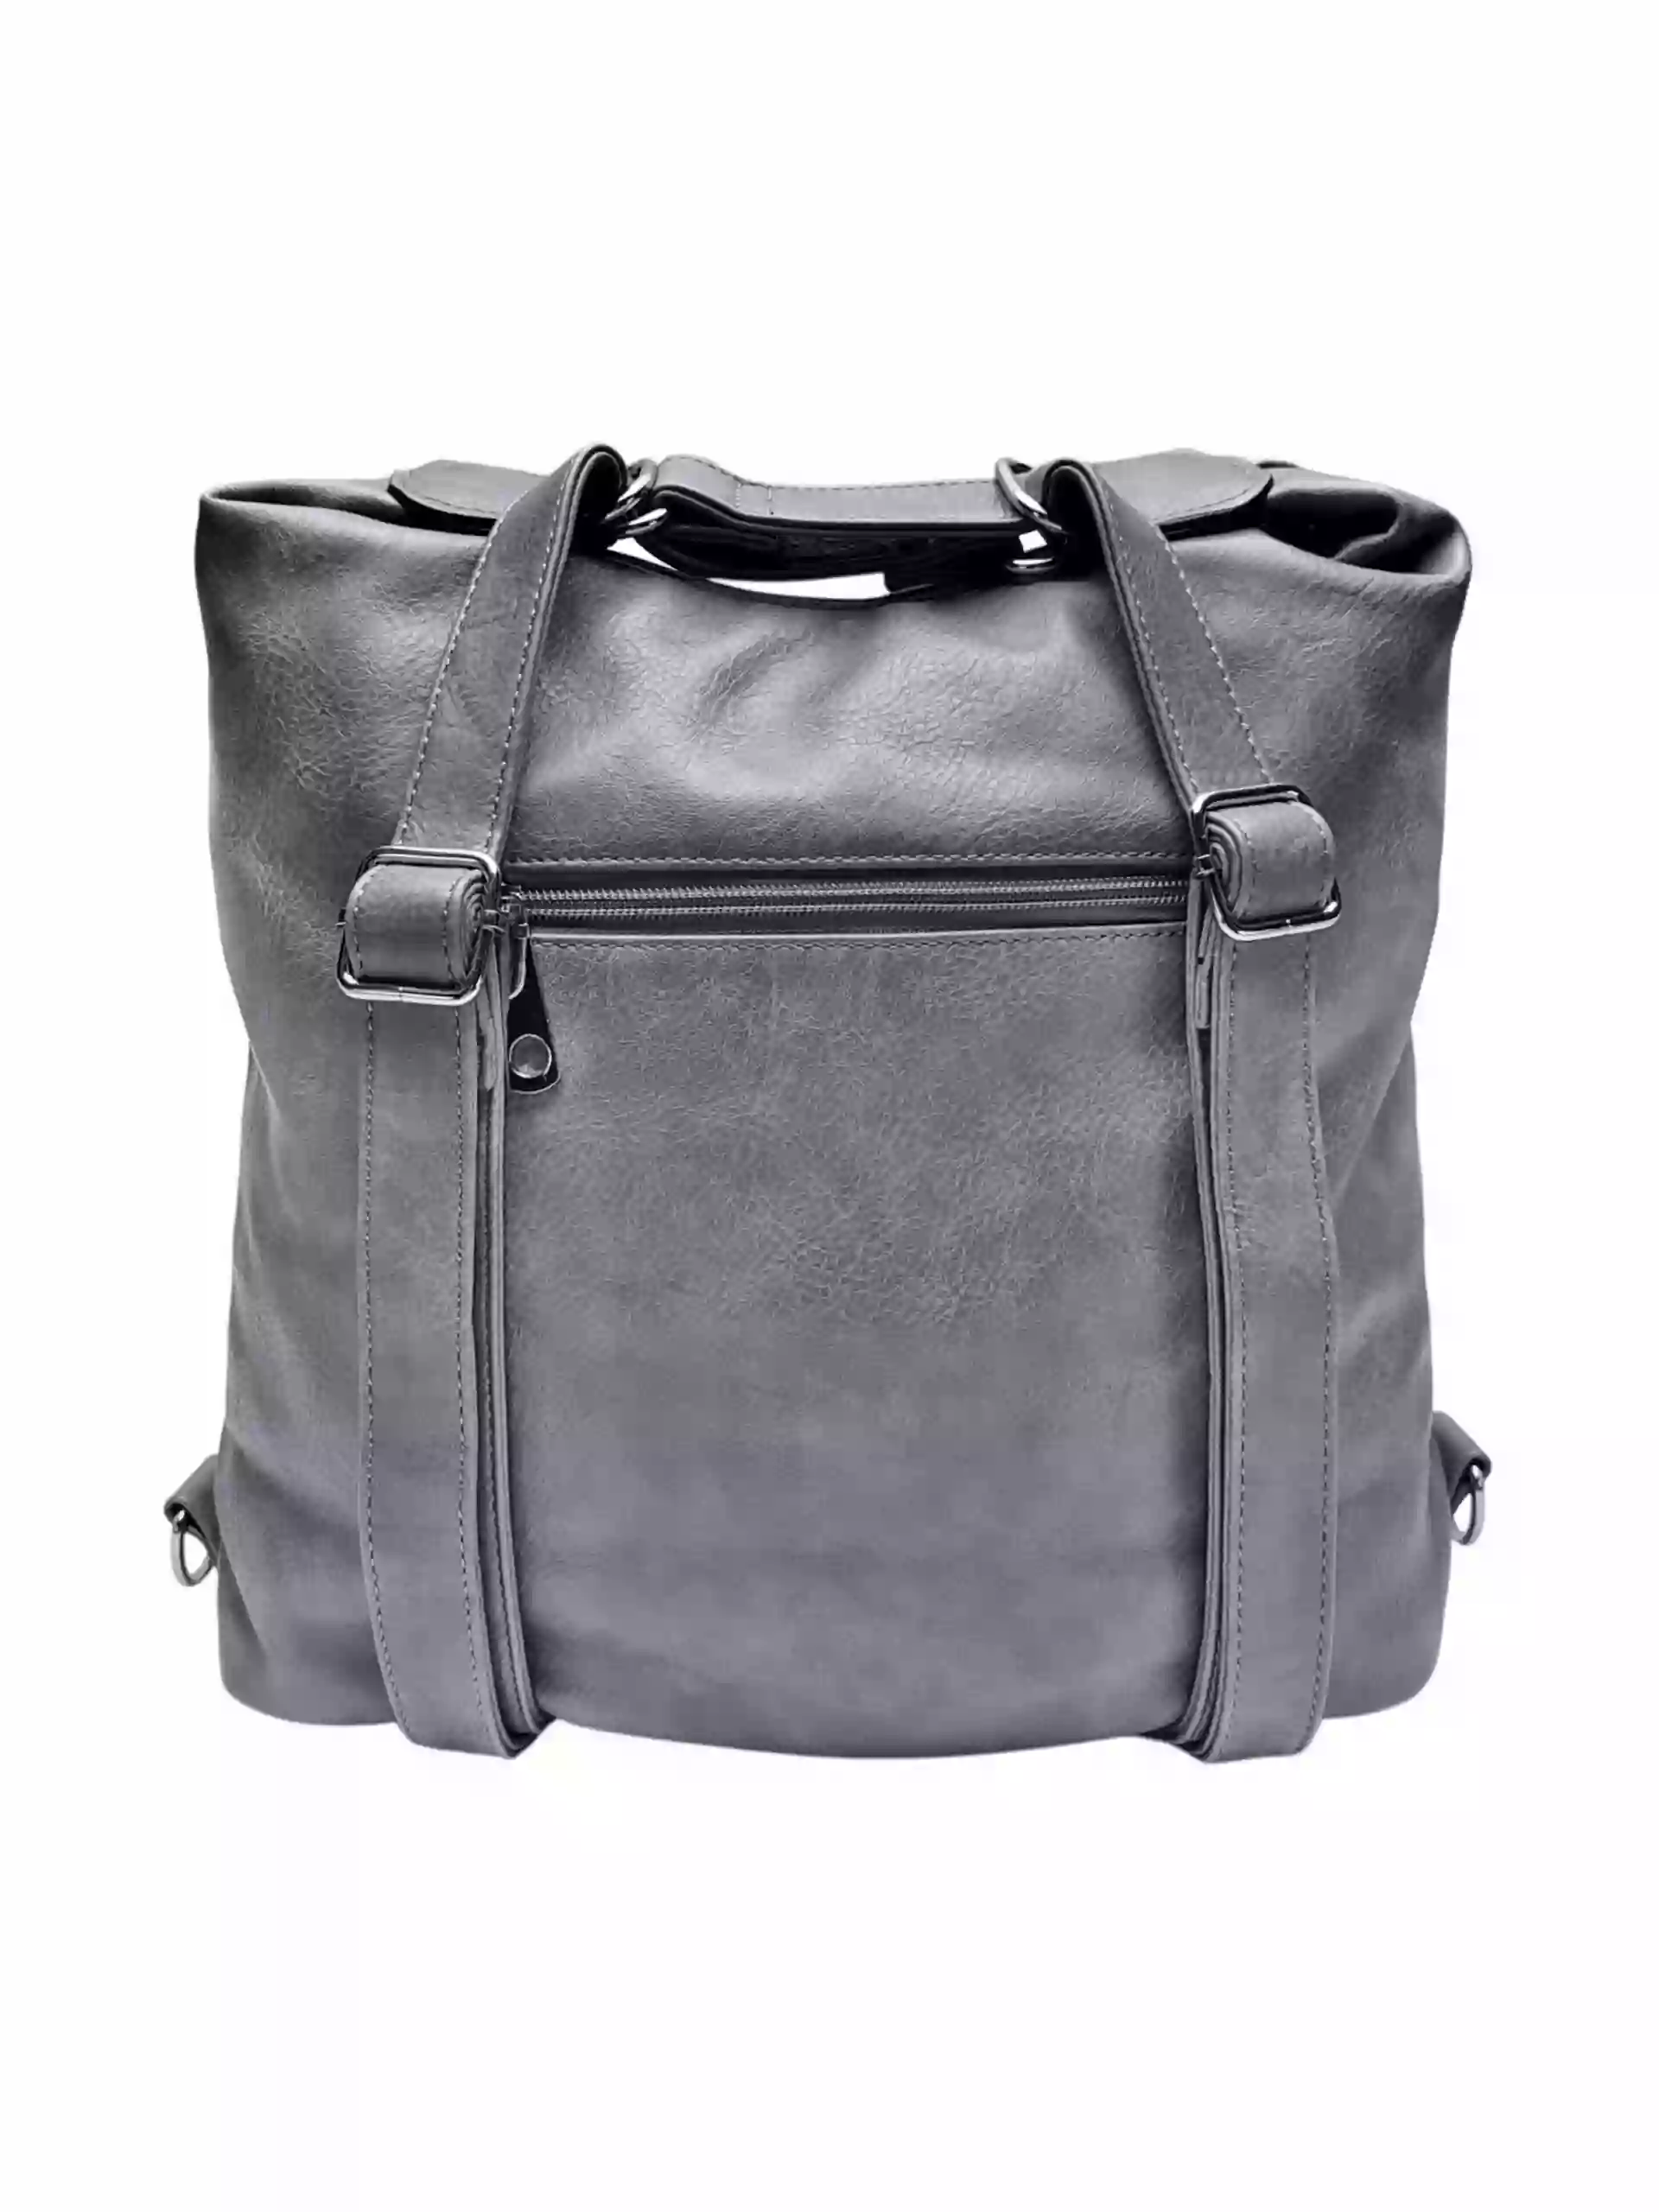 Velký středně šedý kabelko-batoh z eko kůže, Tapple, H18076, zadní strana kabelko-batohu s popruhy